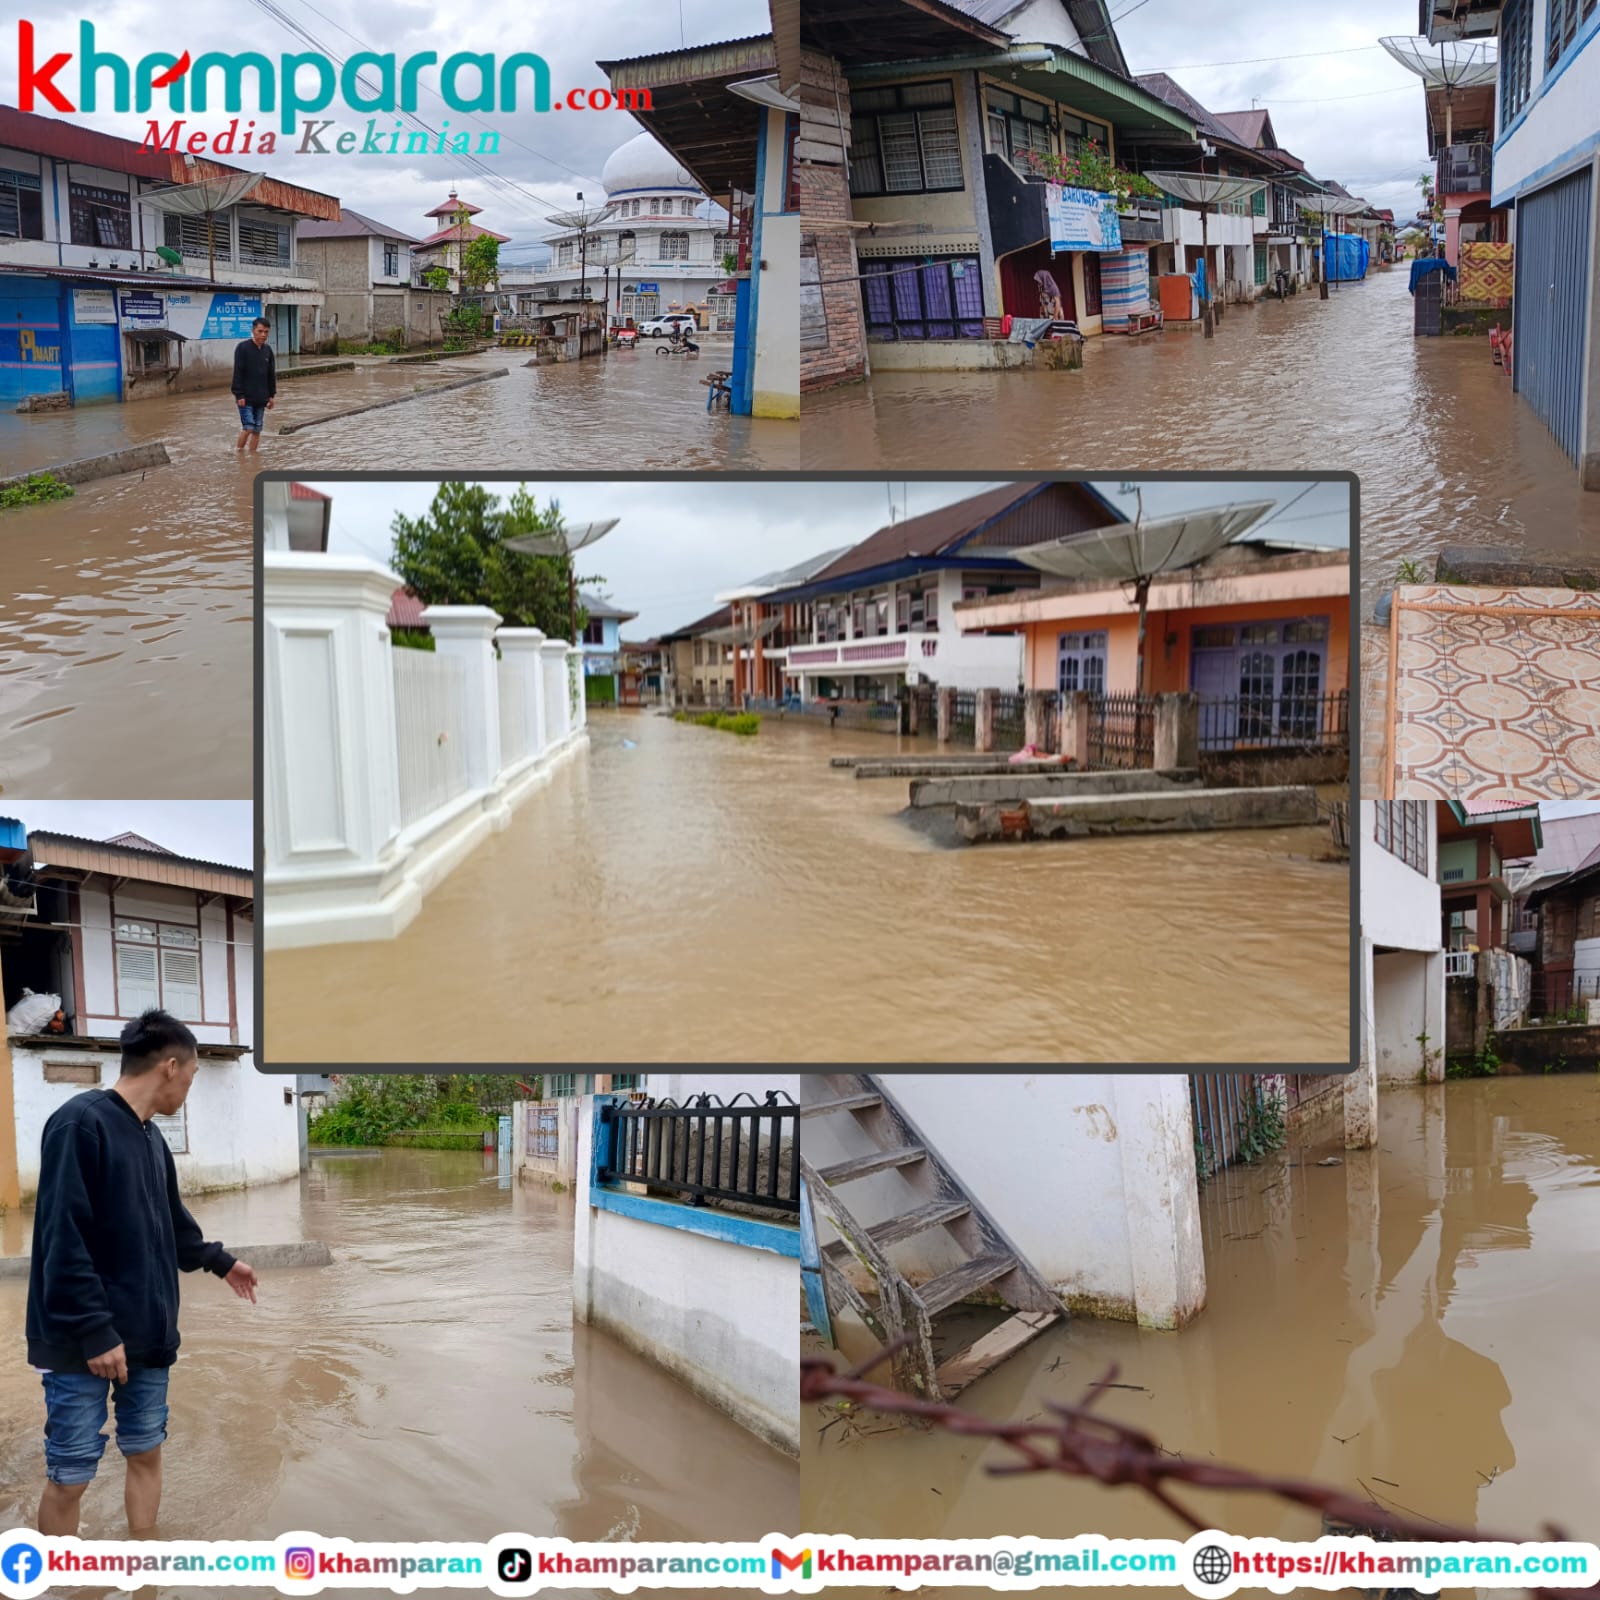 Tiga Desa Di Tanjung Tanah Dilanda Banjir, Pemerintah Hanya Diam Tak Ada Tindakan